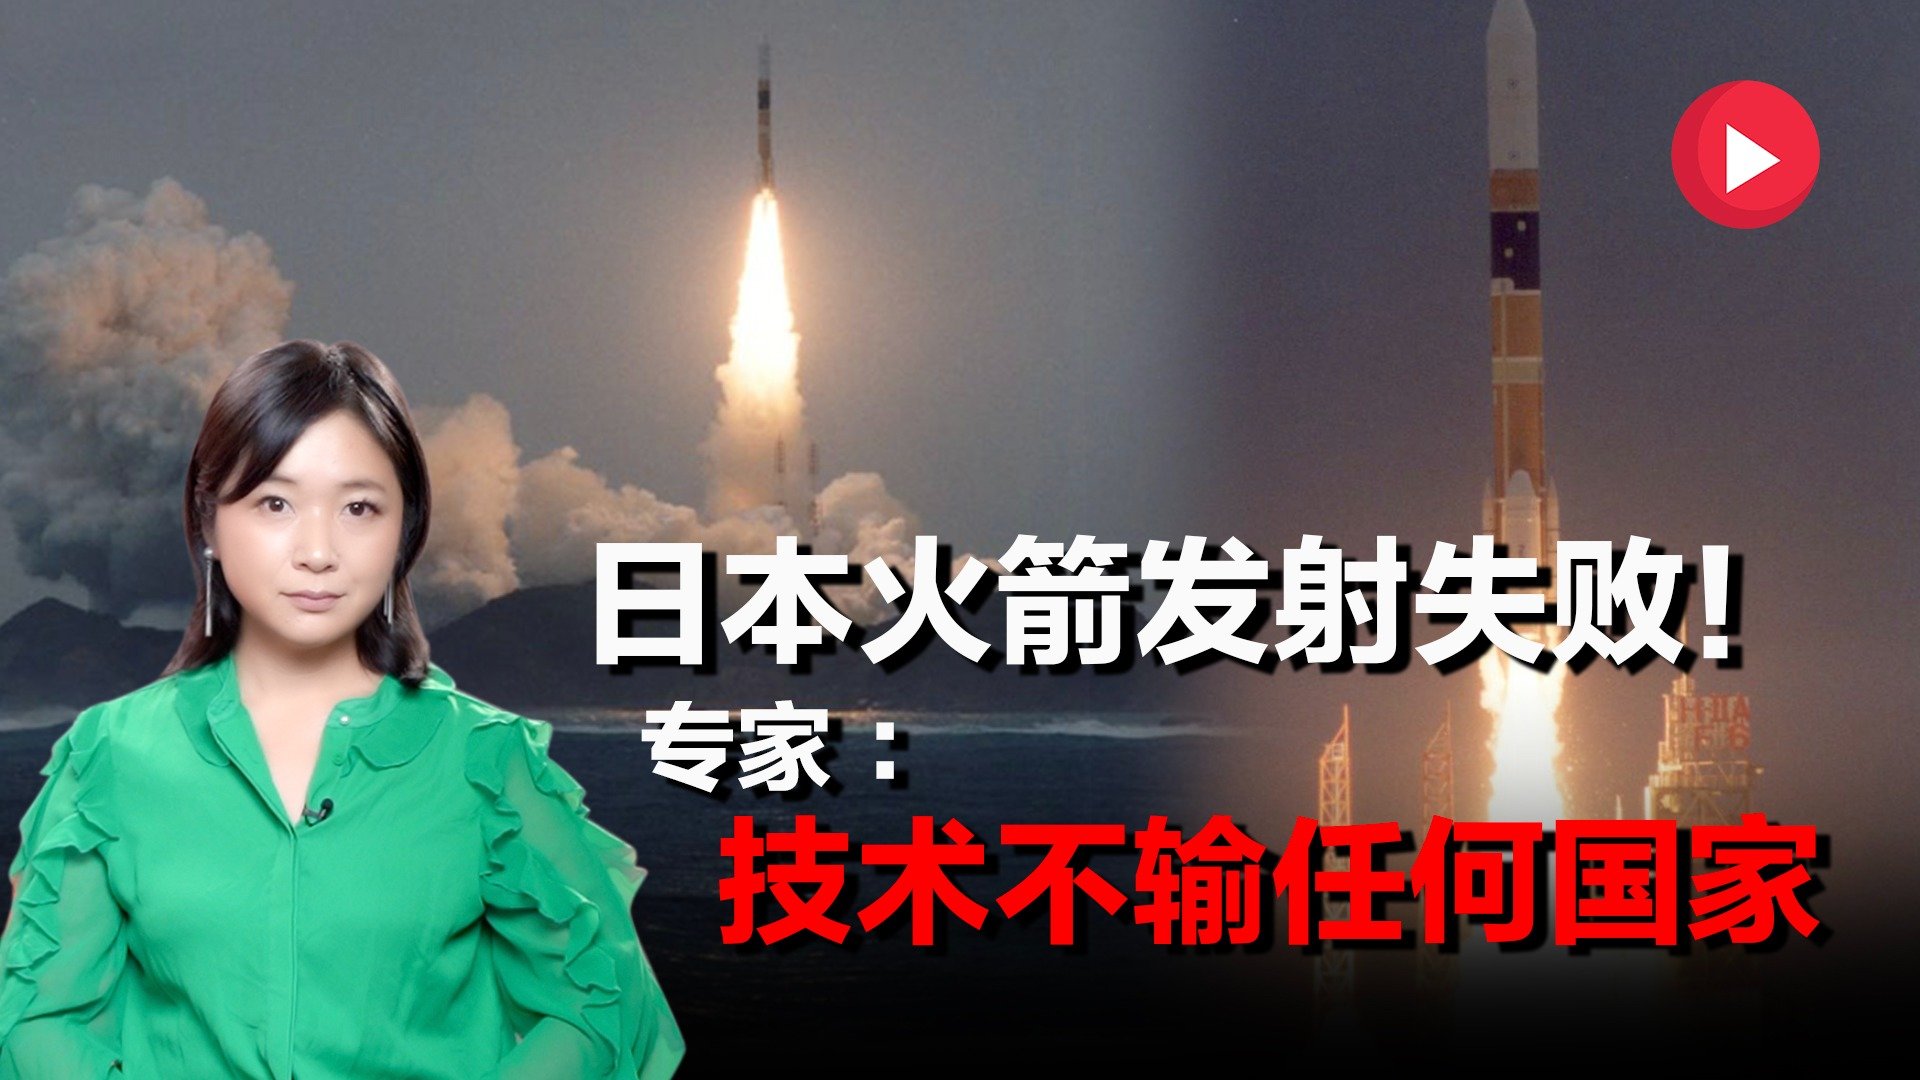 日本火箭时隔近20年发射失败 太空技术落后中国多少年？